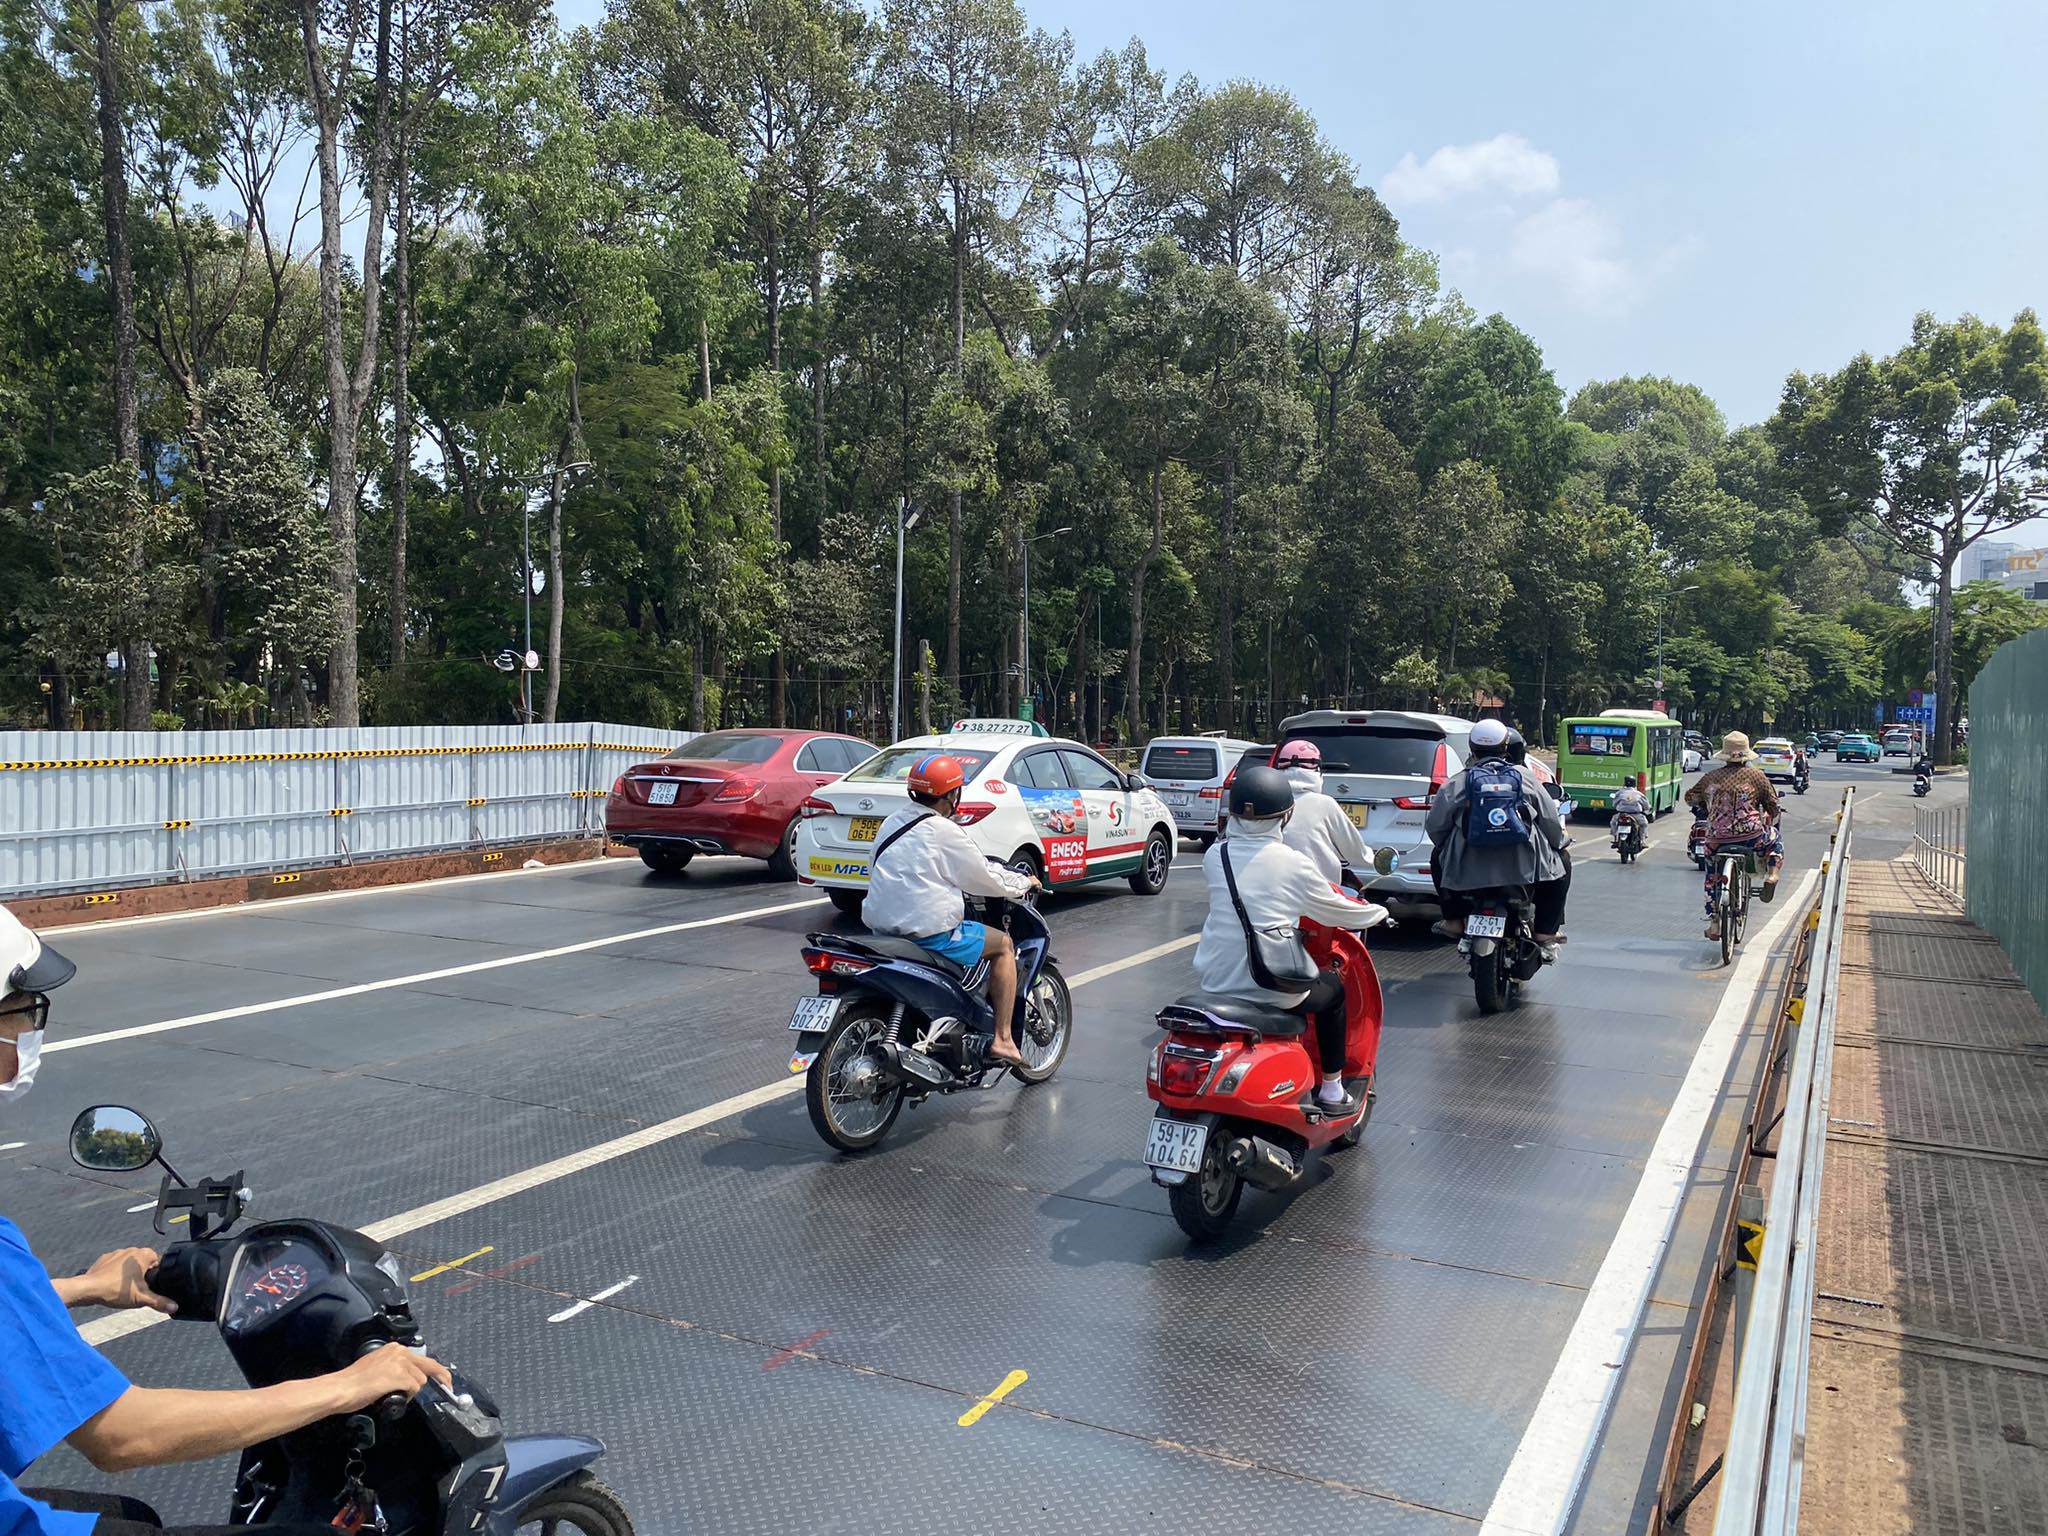 Cầu vượt tạm thứ nhất với quy mô 3 làn xe, dài 66m, rộng 14m, nằm trên đường Trần Quốc Hoàn, phía đường Phan Thúc Duyện.